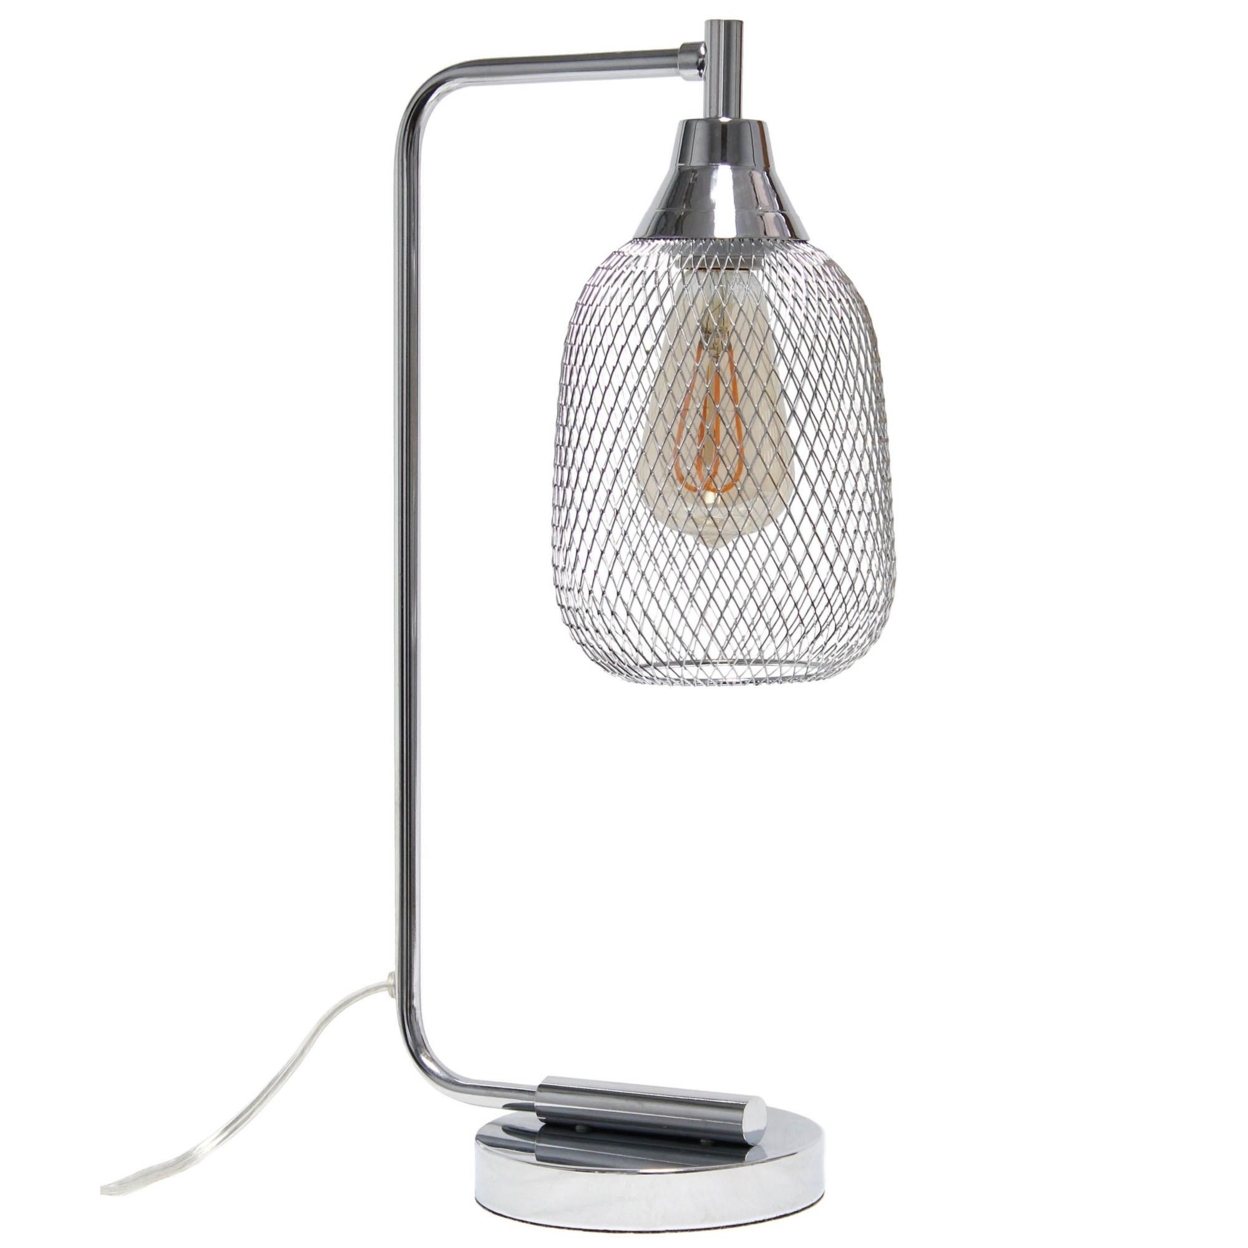 Lalia Home Industrial Mesh Desk Lamp, Chrome